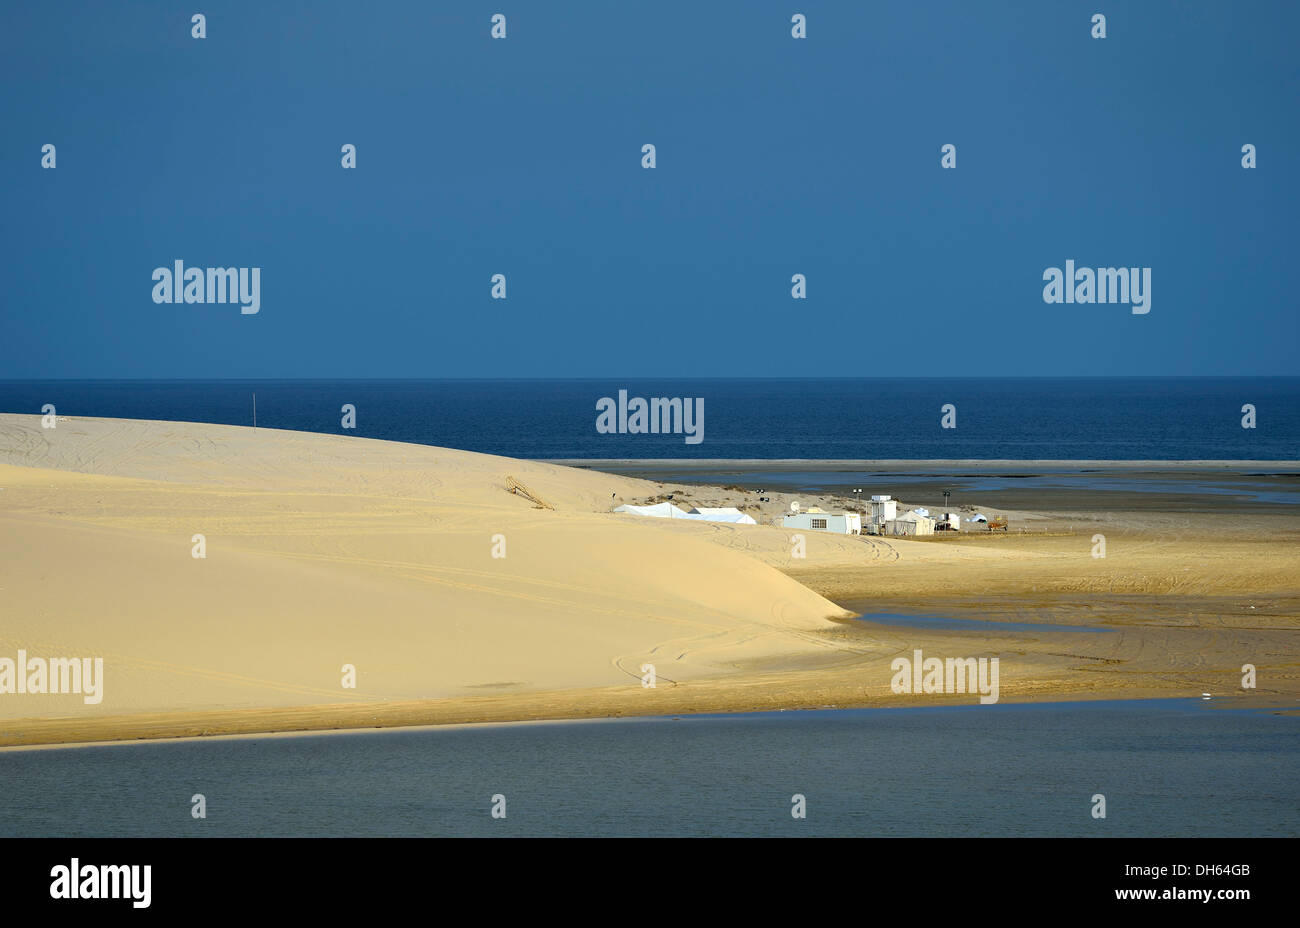 Tenda beduina, dune di sabbia, mare interno, miracolo nel deserto del Qatar, Khor Al Udeid Beach, auch Khor El Deid, Inland Sea Foto Stock